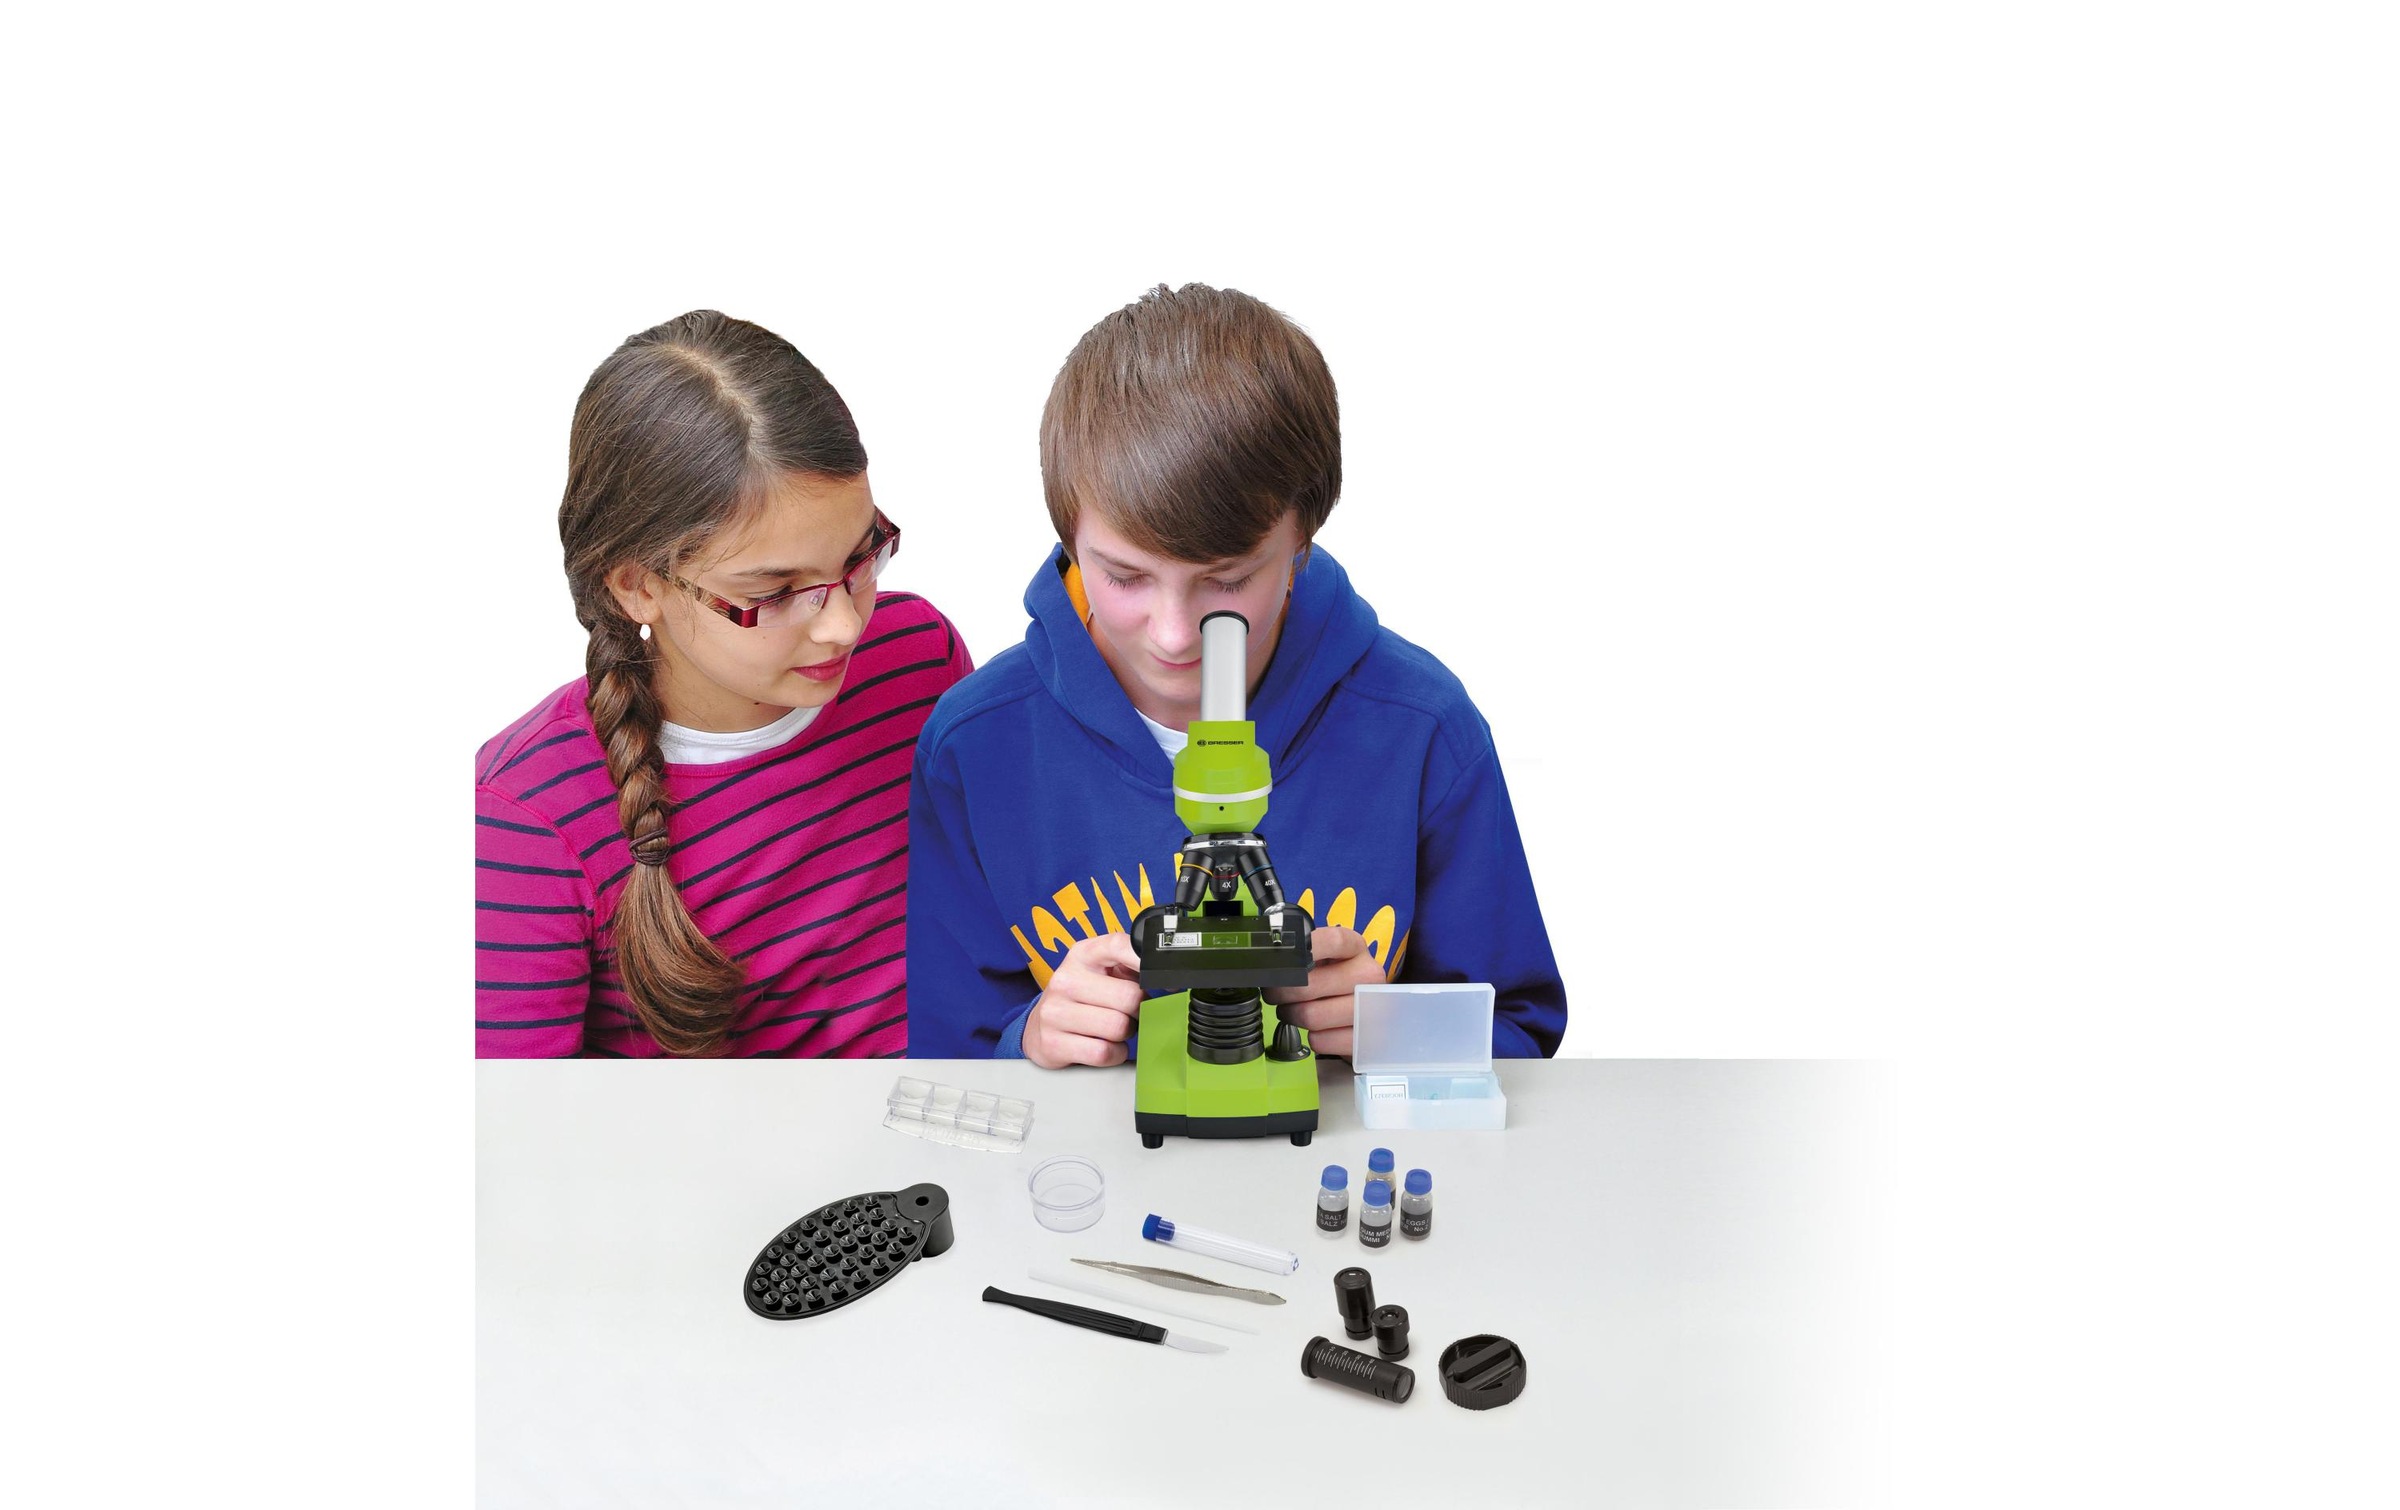 BRESSER junior Kindermikroskop »Junior für Schüler 40x - 160«